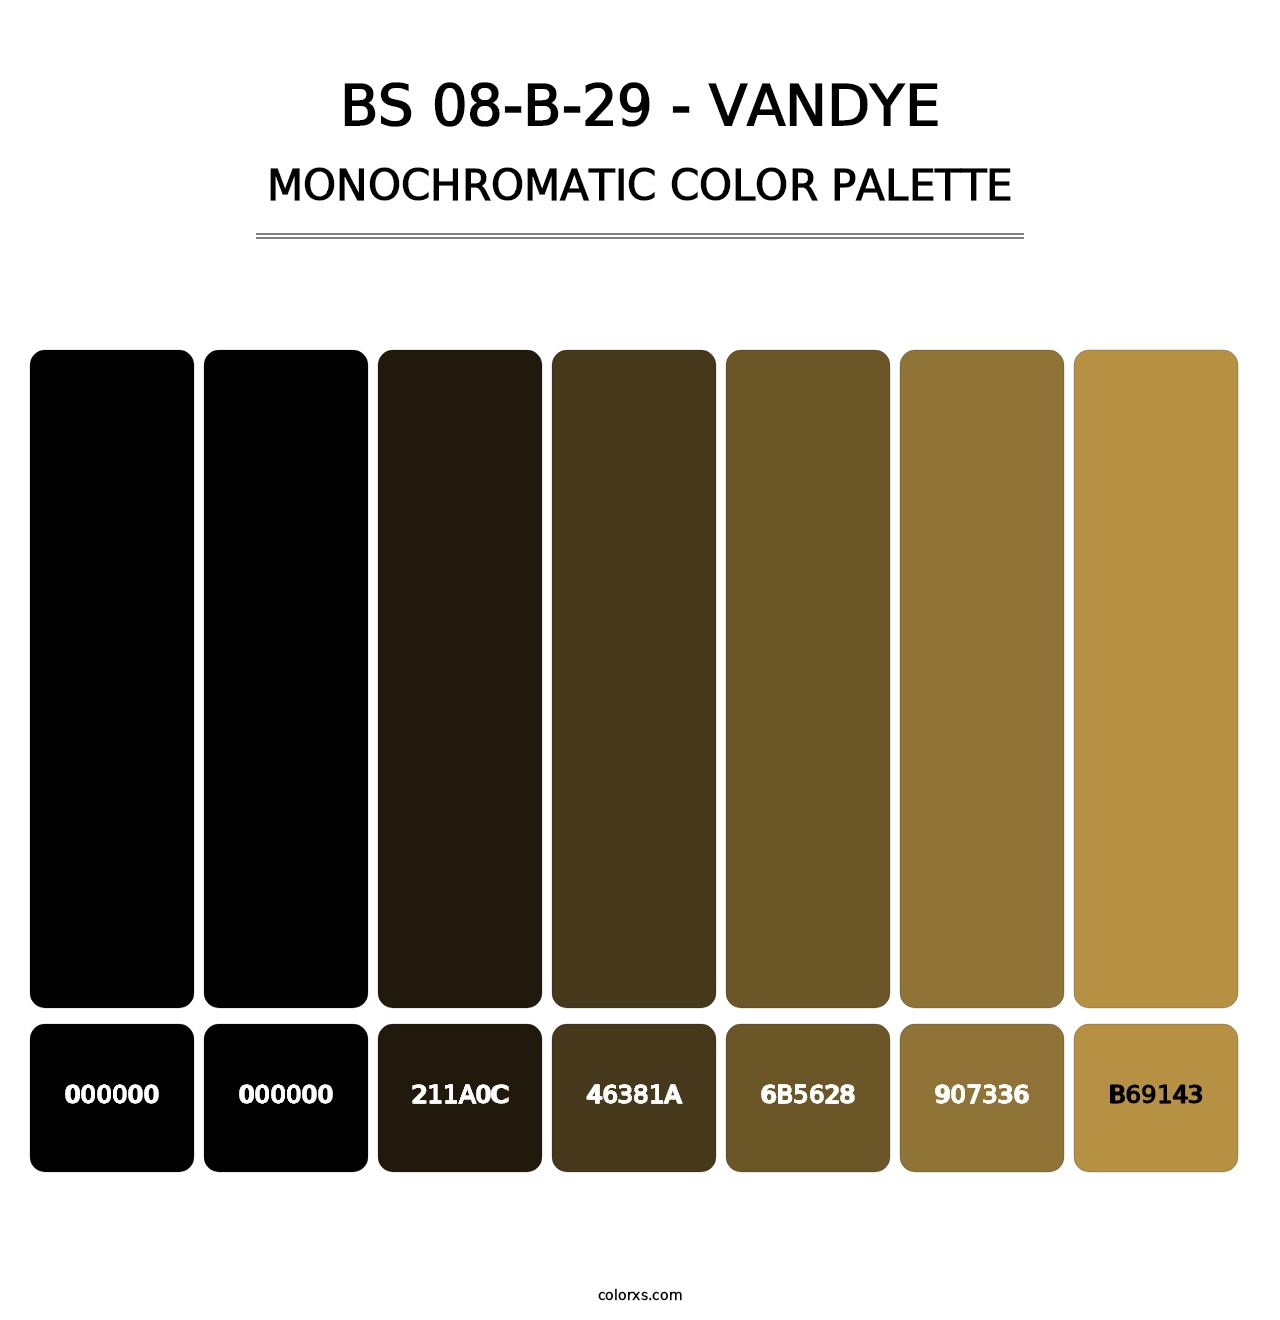 BS 08-B-29 - Vandye - Monochromatic Color Palette